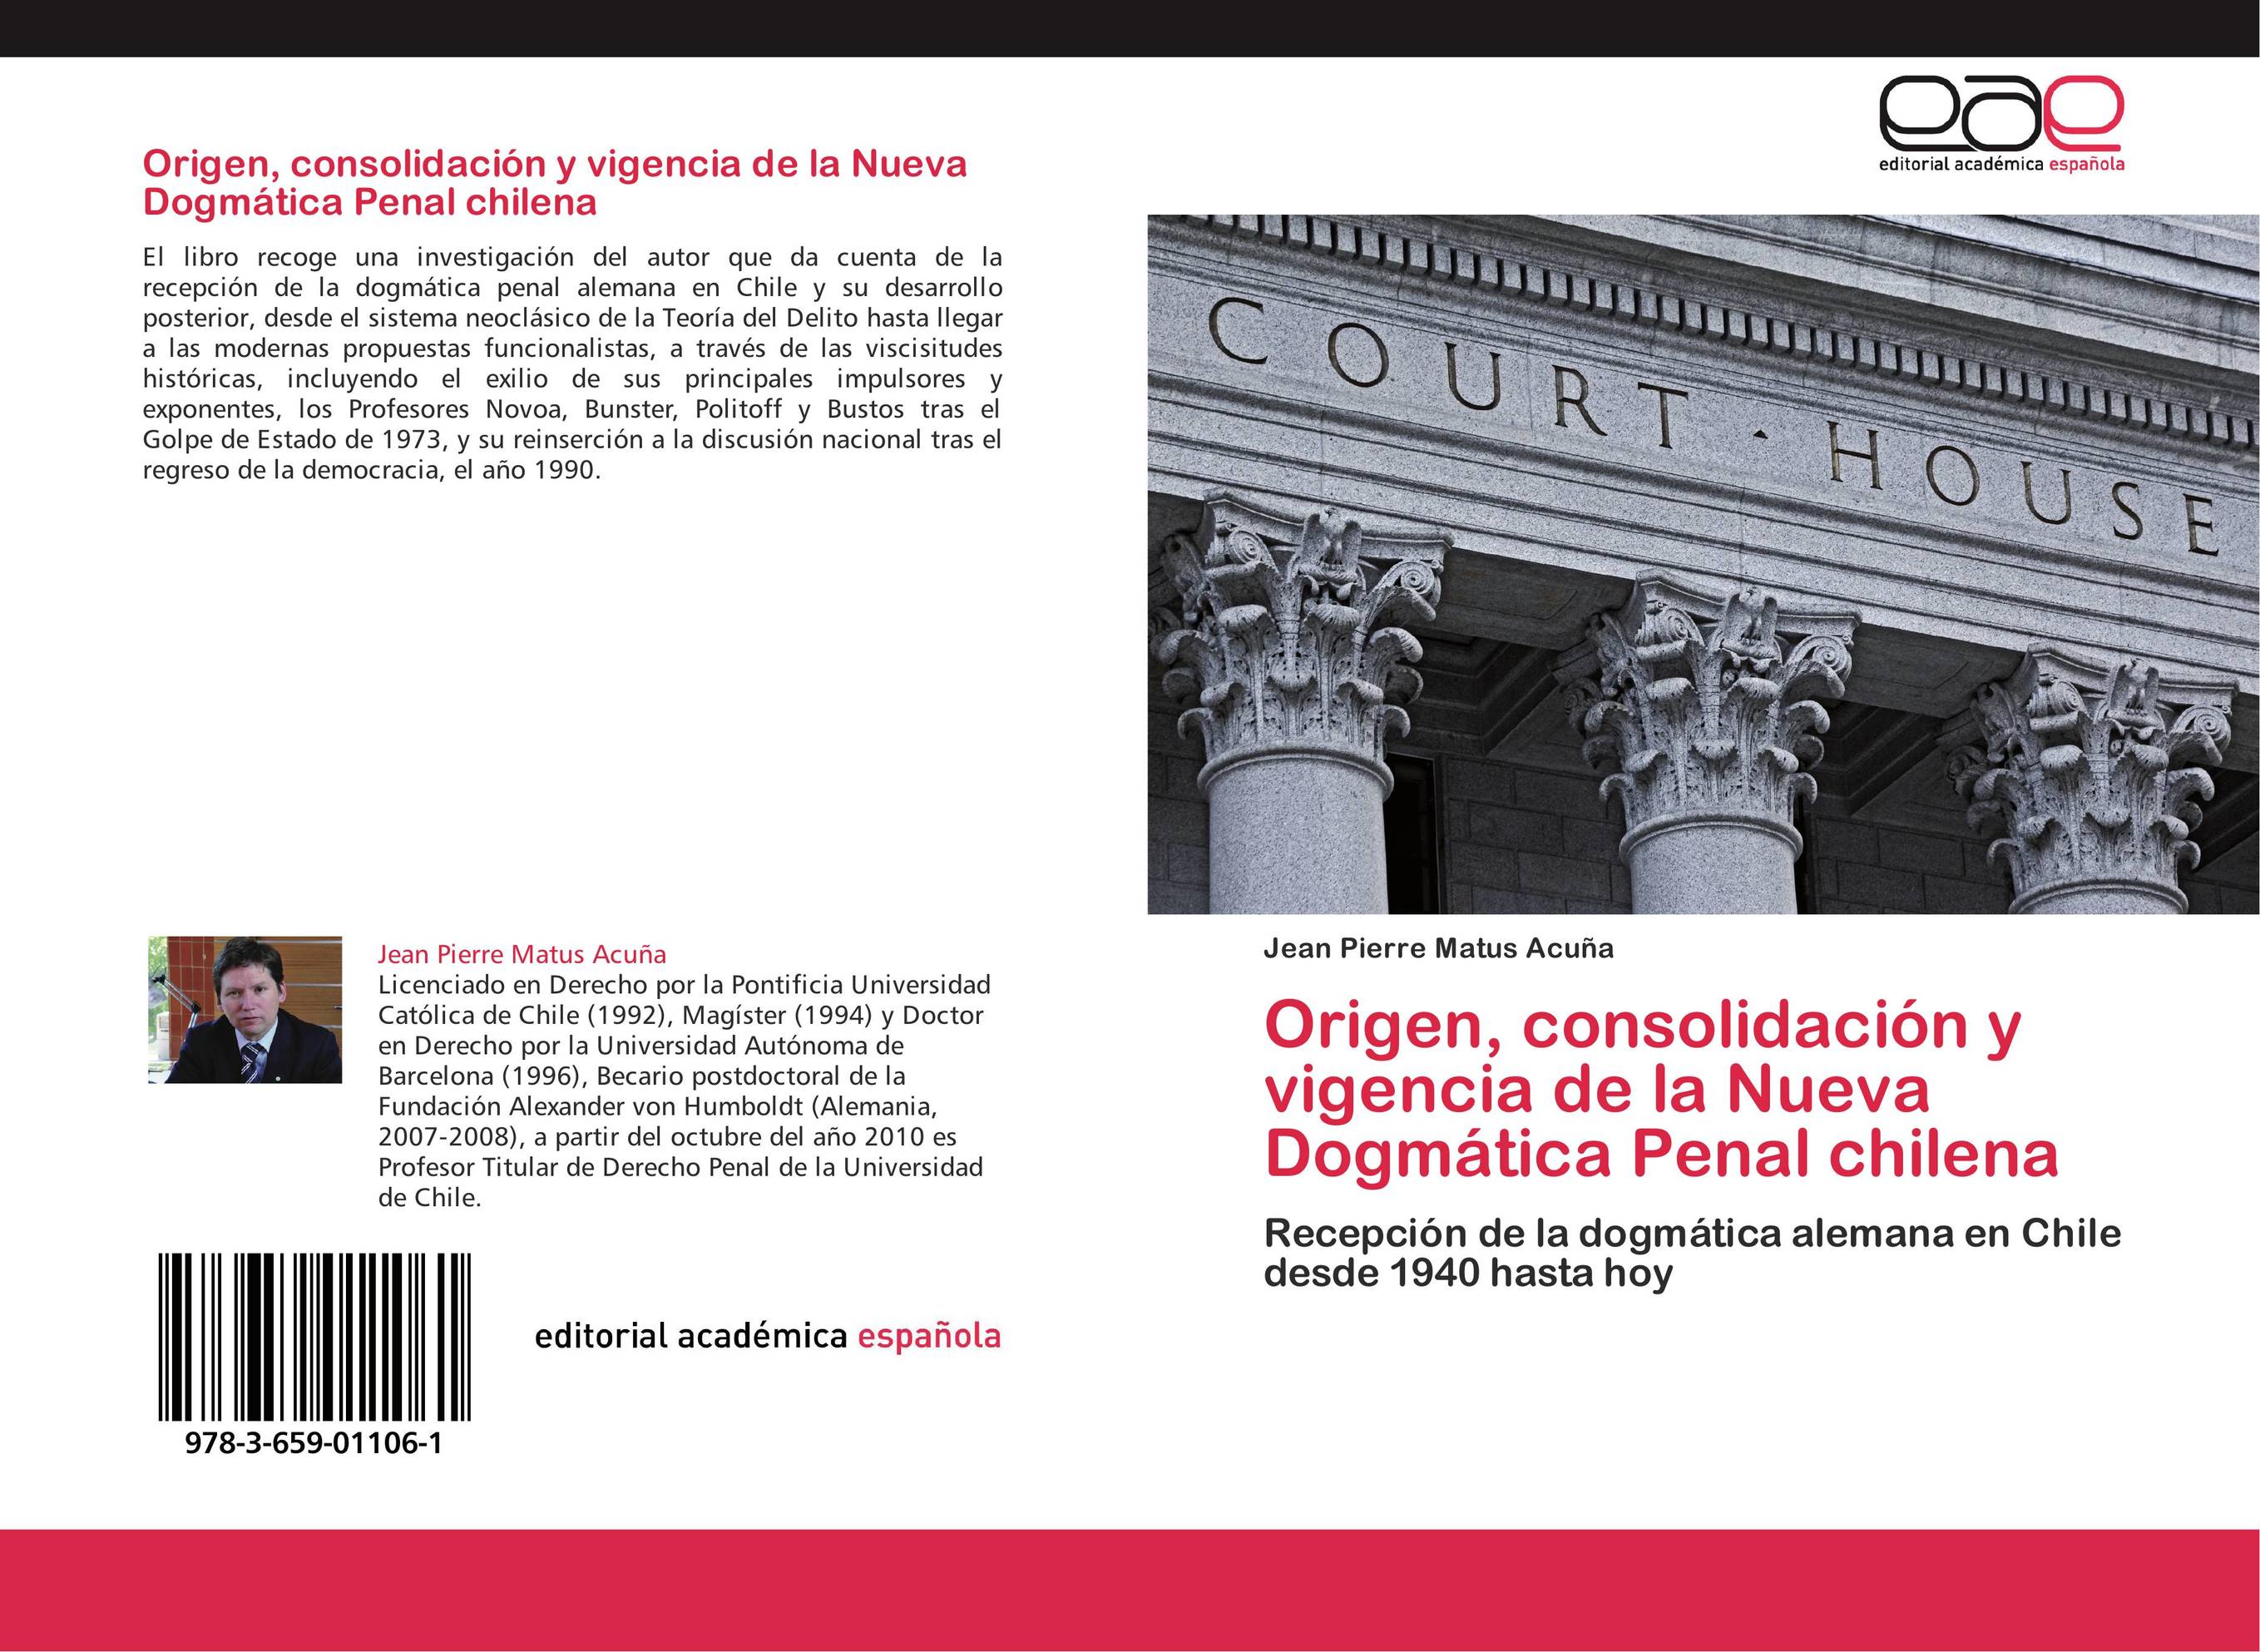 Origen, consolidación y vigencia de la Nueva Dogmática Penal chilena